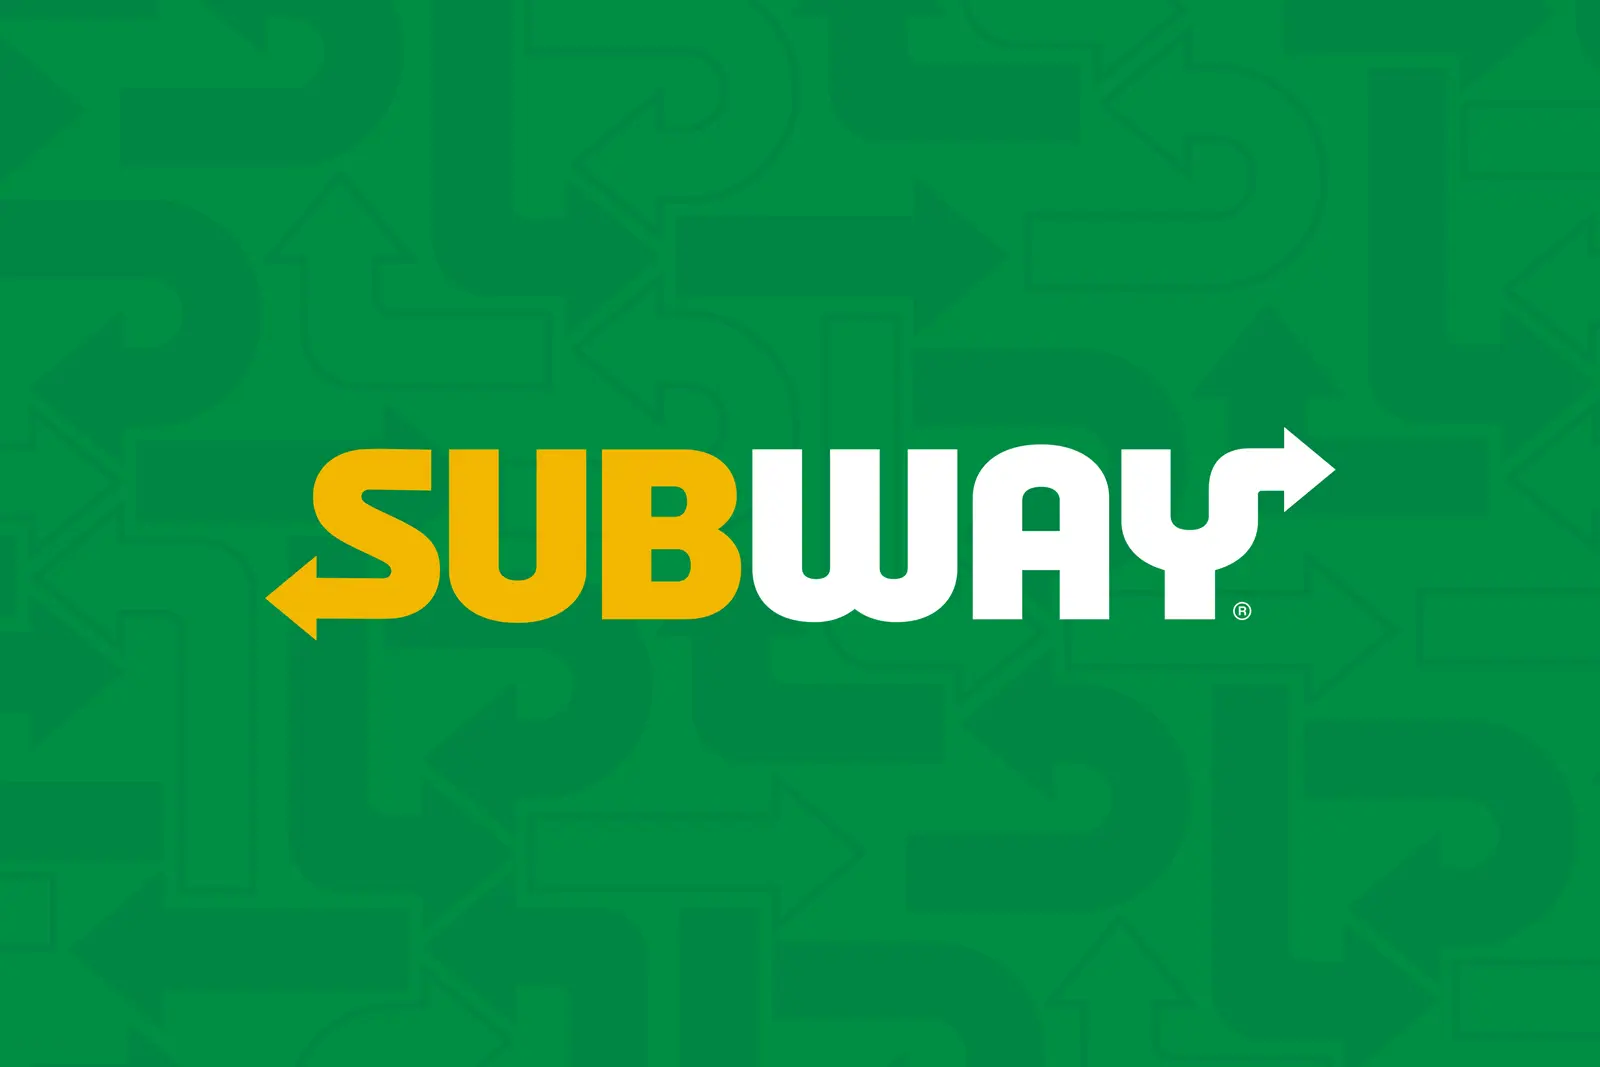 (c) Subway-franchise.de